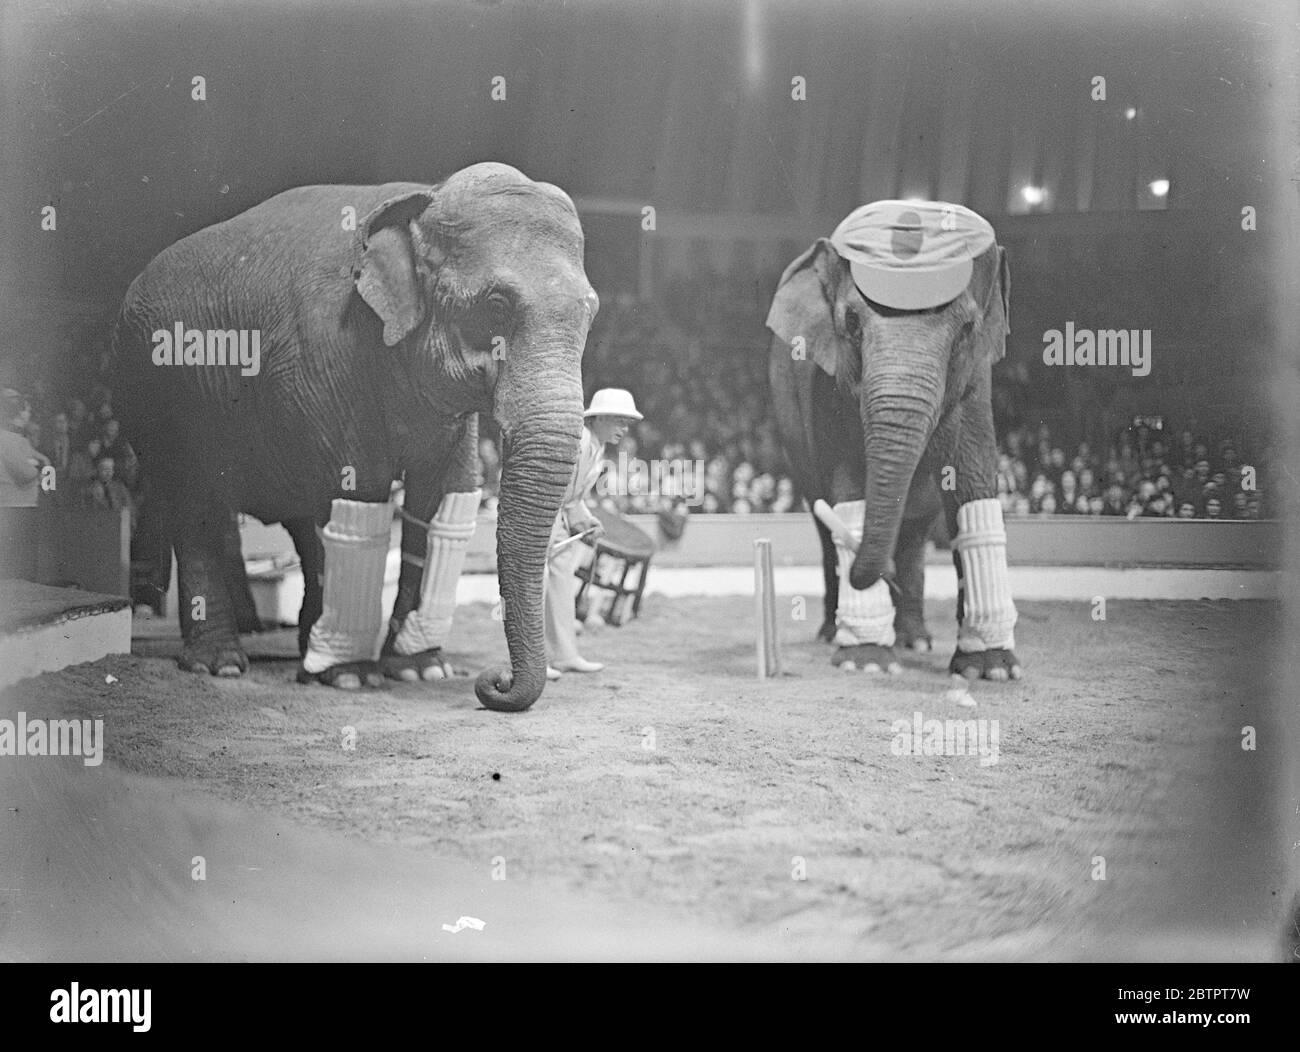 Elefanten, die Cricket spielen. Der Schlagmann komplett mit Mütze passend zu seinen Proportionen, hat seine Fledermaus angehoben, um mit einer Lieferung umzugehen. Der Wicketwärter ist wachsam. 22 Dezember 1932 Stockfoto